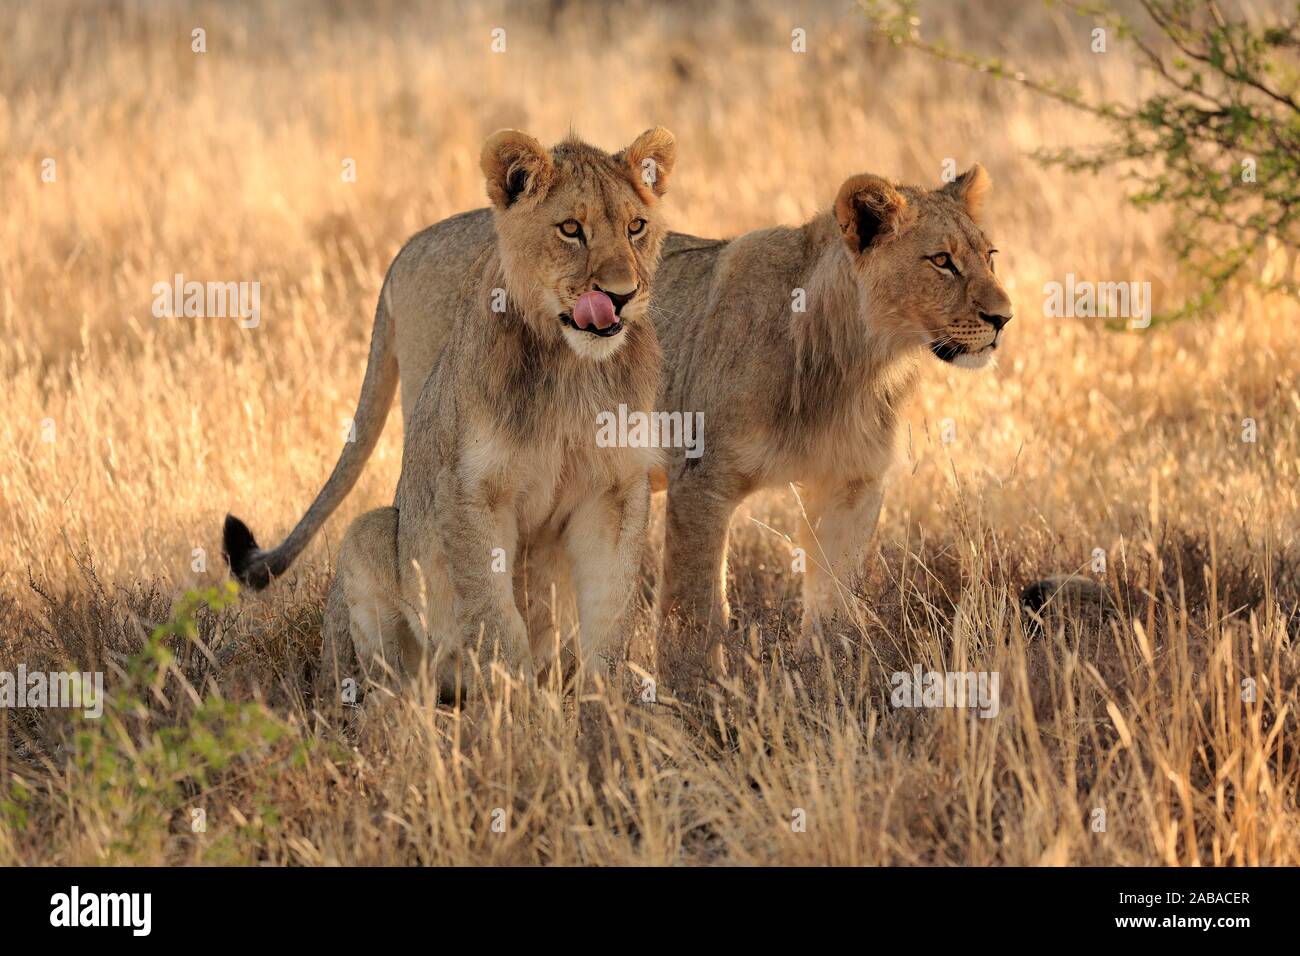 Löwen (Panthera leo), Subadult, männlich, zwei Tiere heraus suchen, Mountain Zebra National Park, Eastern Cape, Südafrika Stockfoto